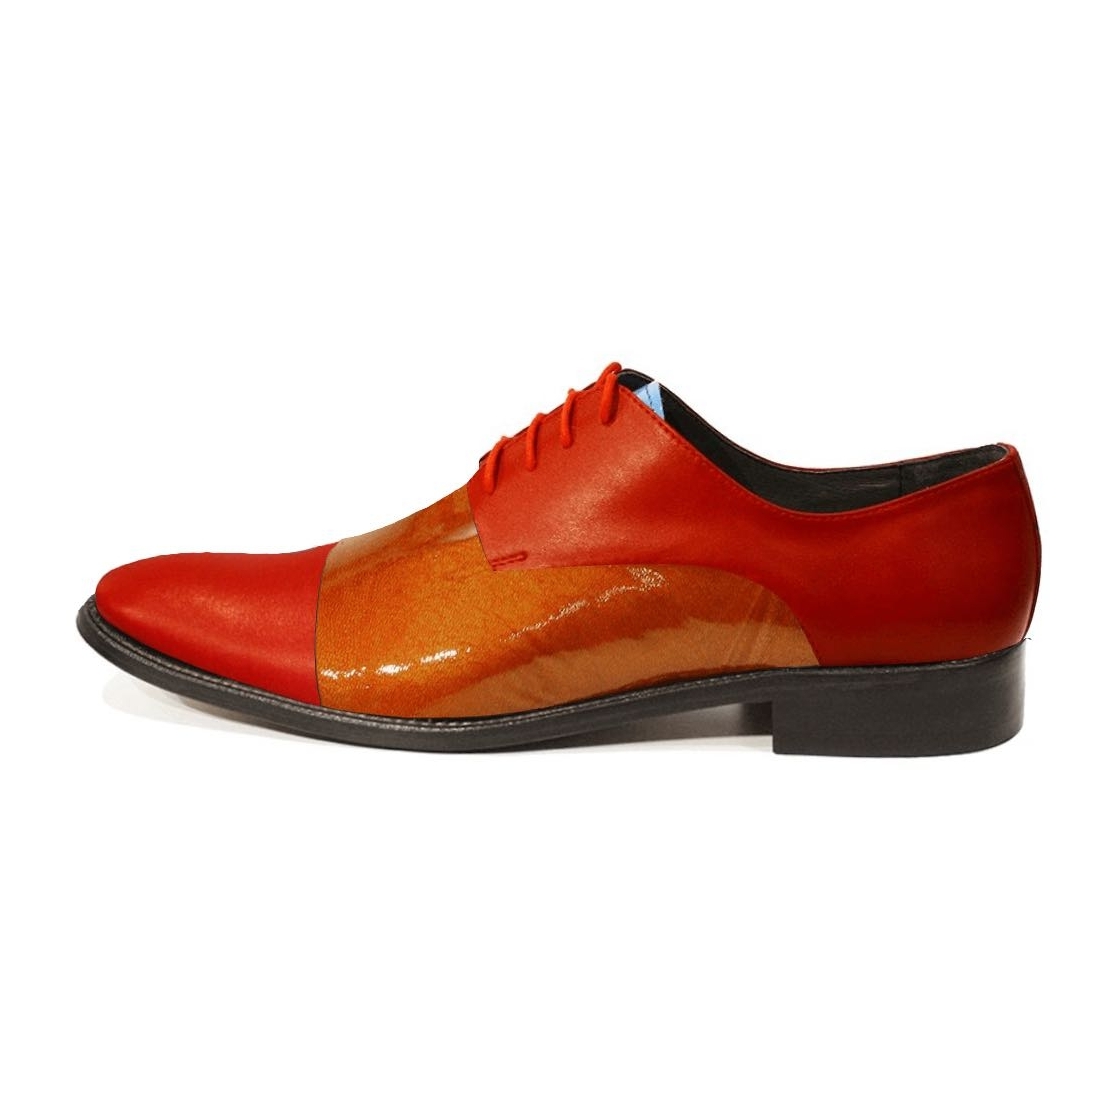 Modello Teterro - Buty Klasyczne - Handmade Colorful Italian Leather Shoes